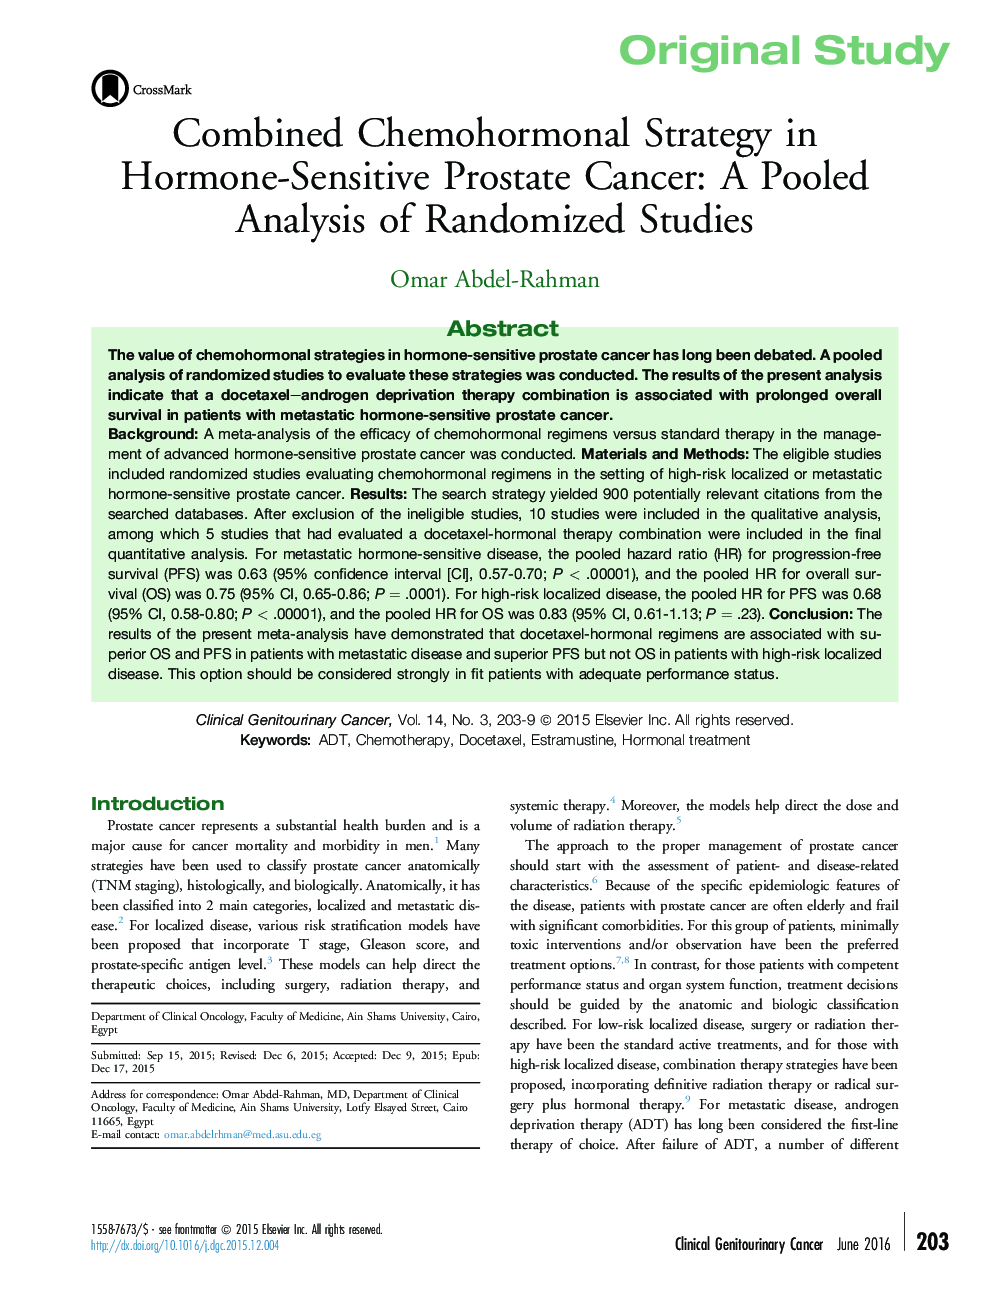 استراتژی ترکیبی هورمونی شیمی در سرطان پروستات حساس به هورمون: تجزیه و تحلیل حاصل از مطالعات تصادفی